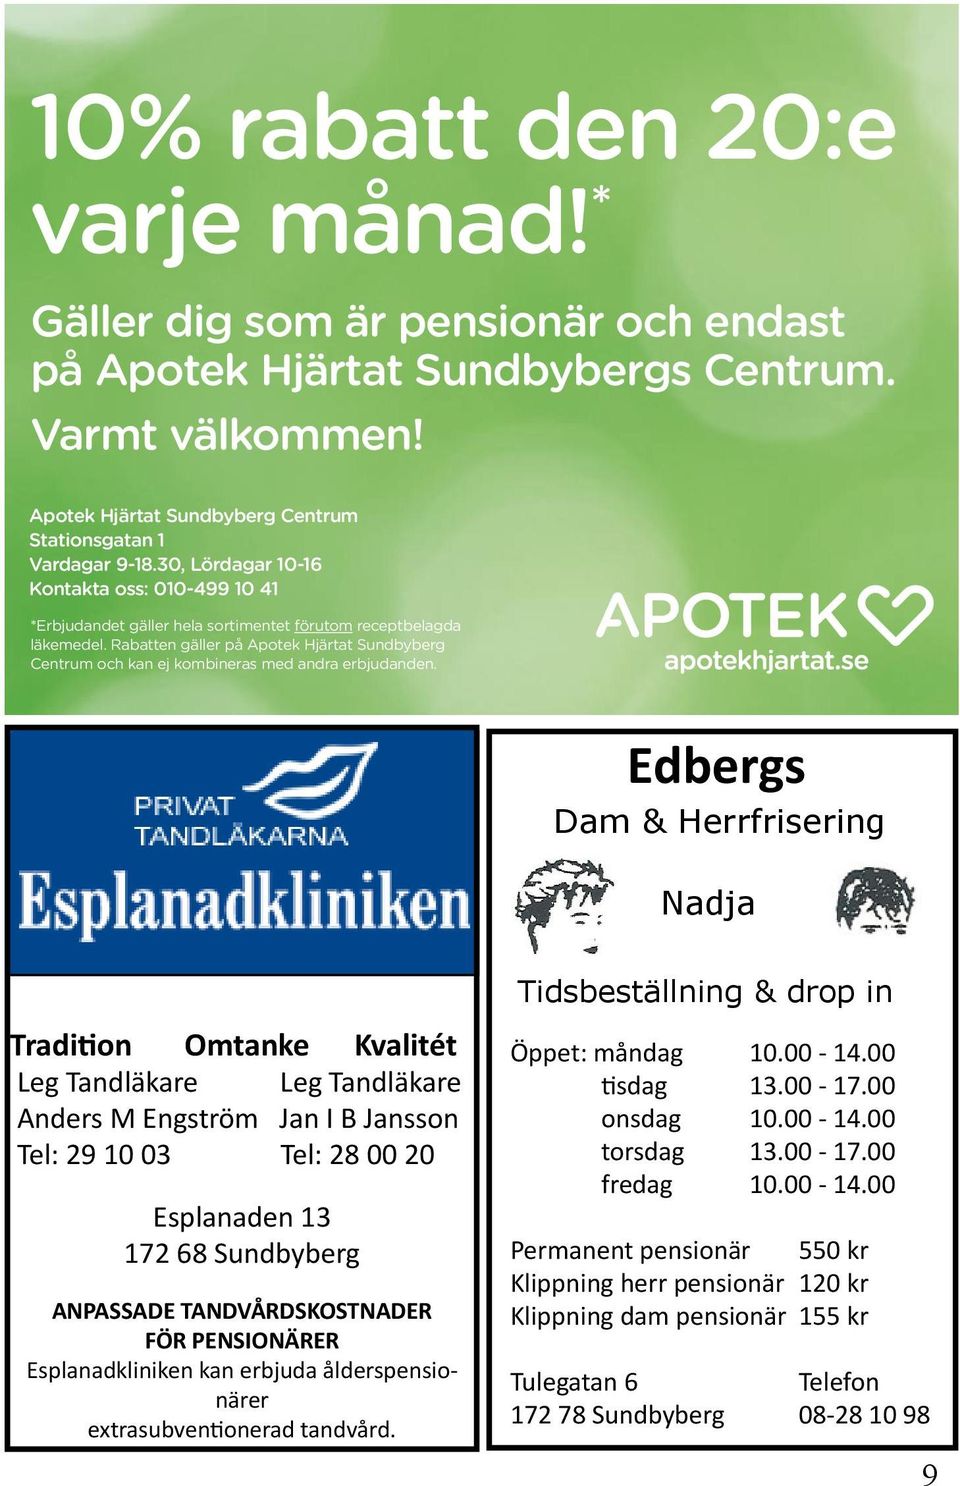 Rabatten gäller på Apotek Hjärtat Sundbyberg Centrum och kan ej kombineras med andra erbjudanden.